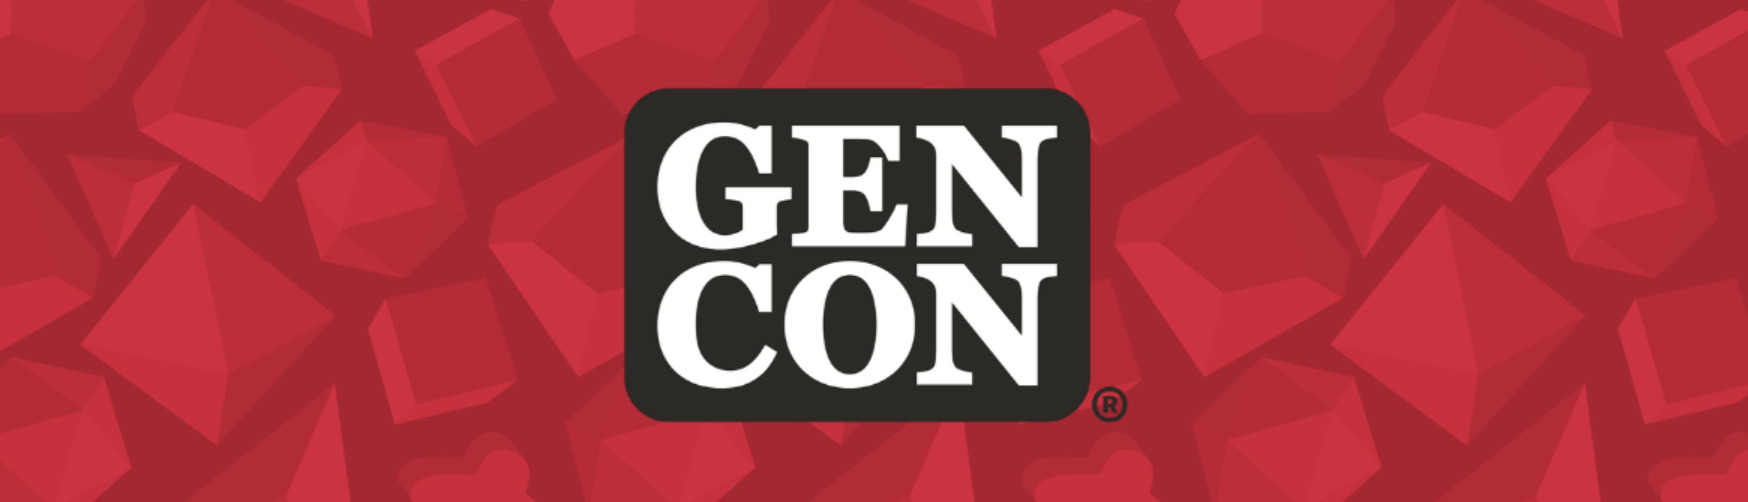 GEN CON Logo